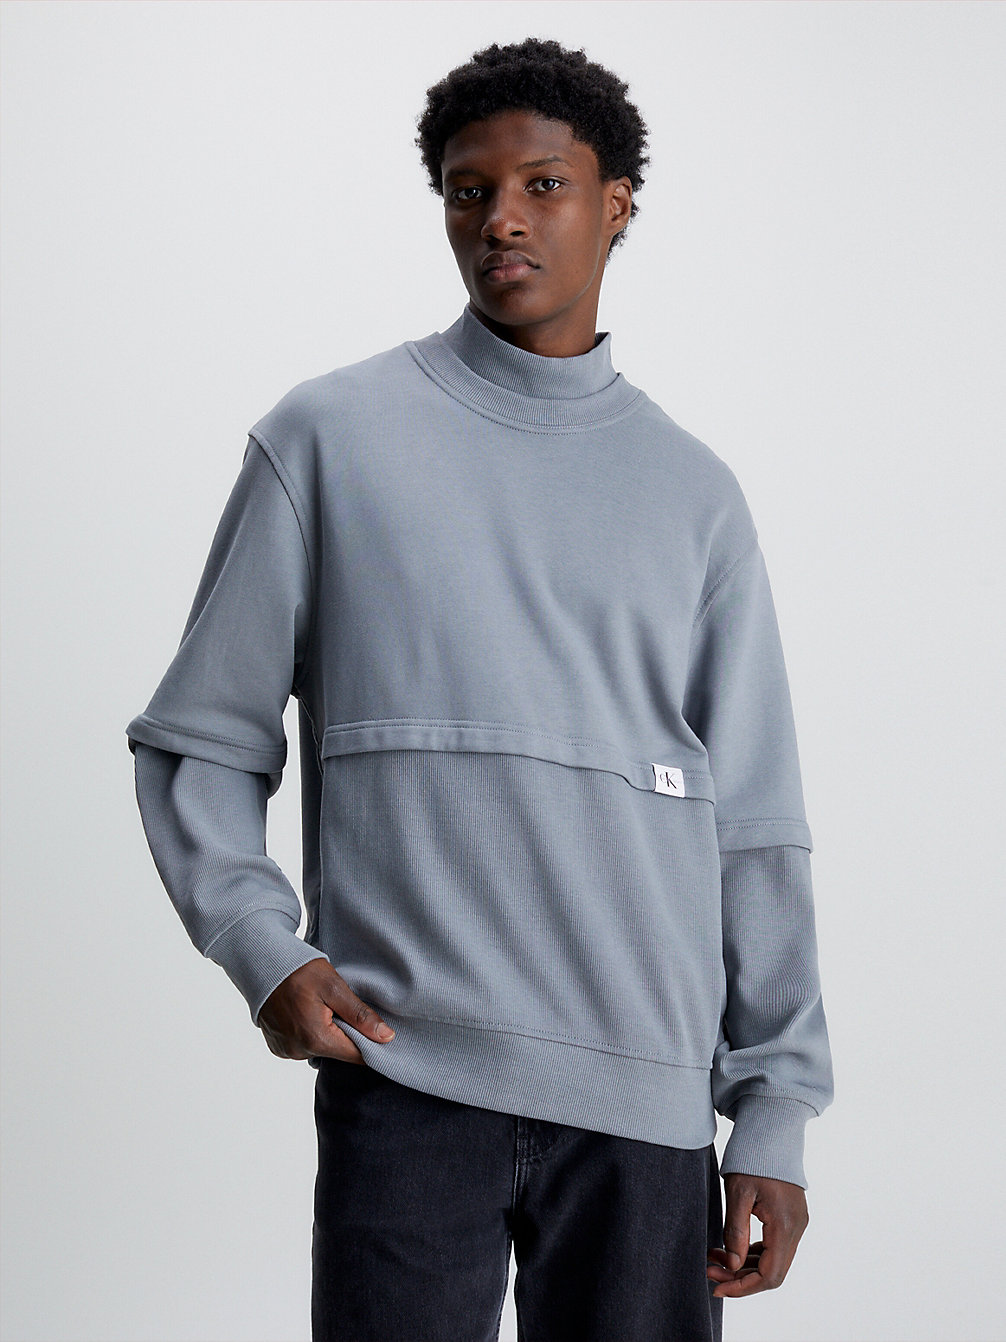 OVERCAST GREY Relaxed Sweatshirt Van Materiaalmix undefined heren Calvin Klein